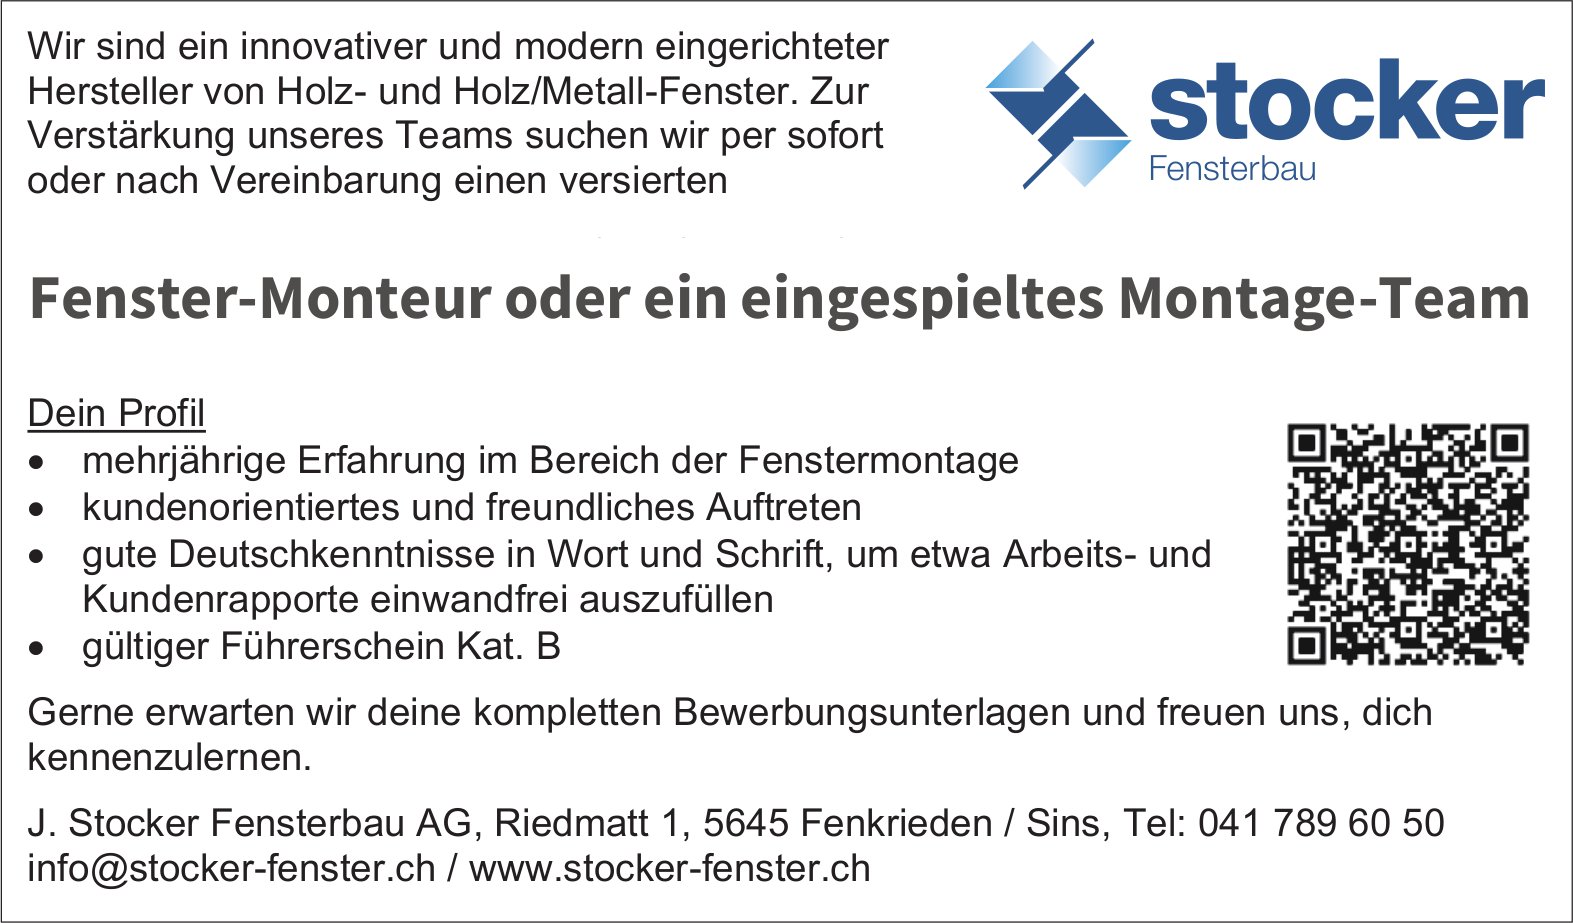 Fenster-Monteur oder ein eingespieltes Montage-Team, J. Stocker Fensterbau AG, Fenkrieden, gesucht